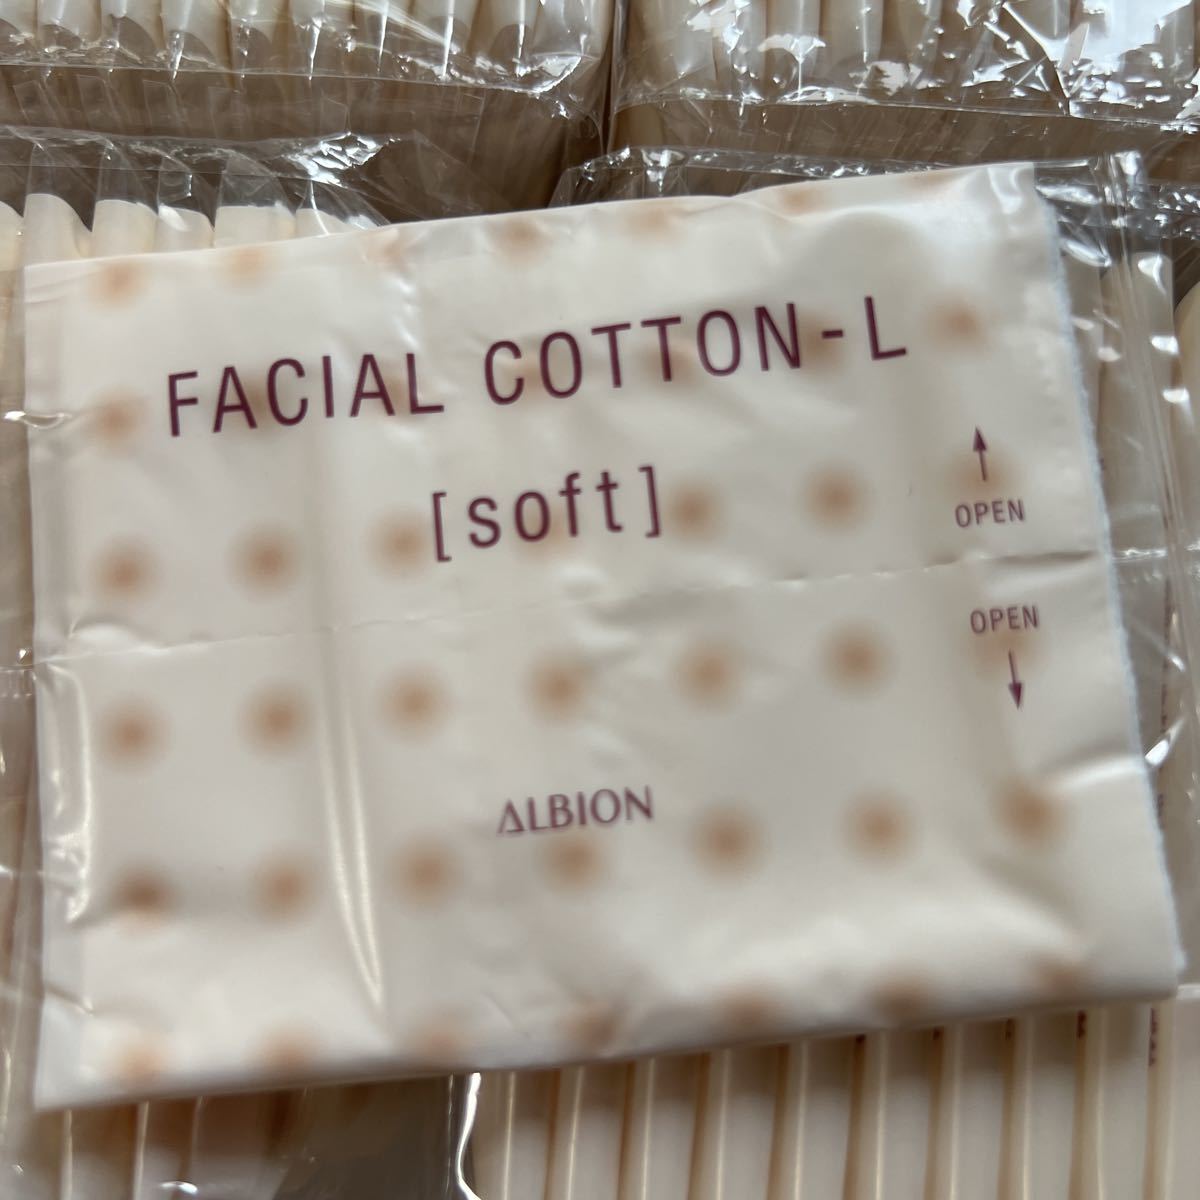  sample unused AL Albion facial cotton soft 2 sheets entering 400 piece 